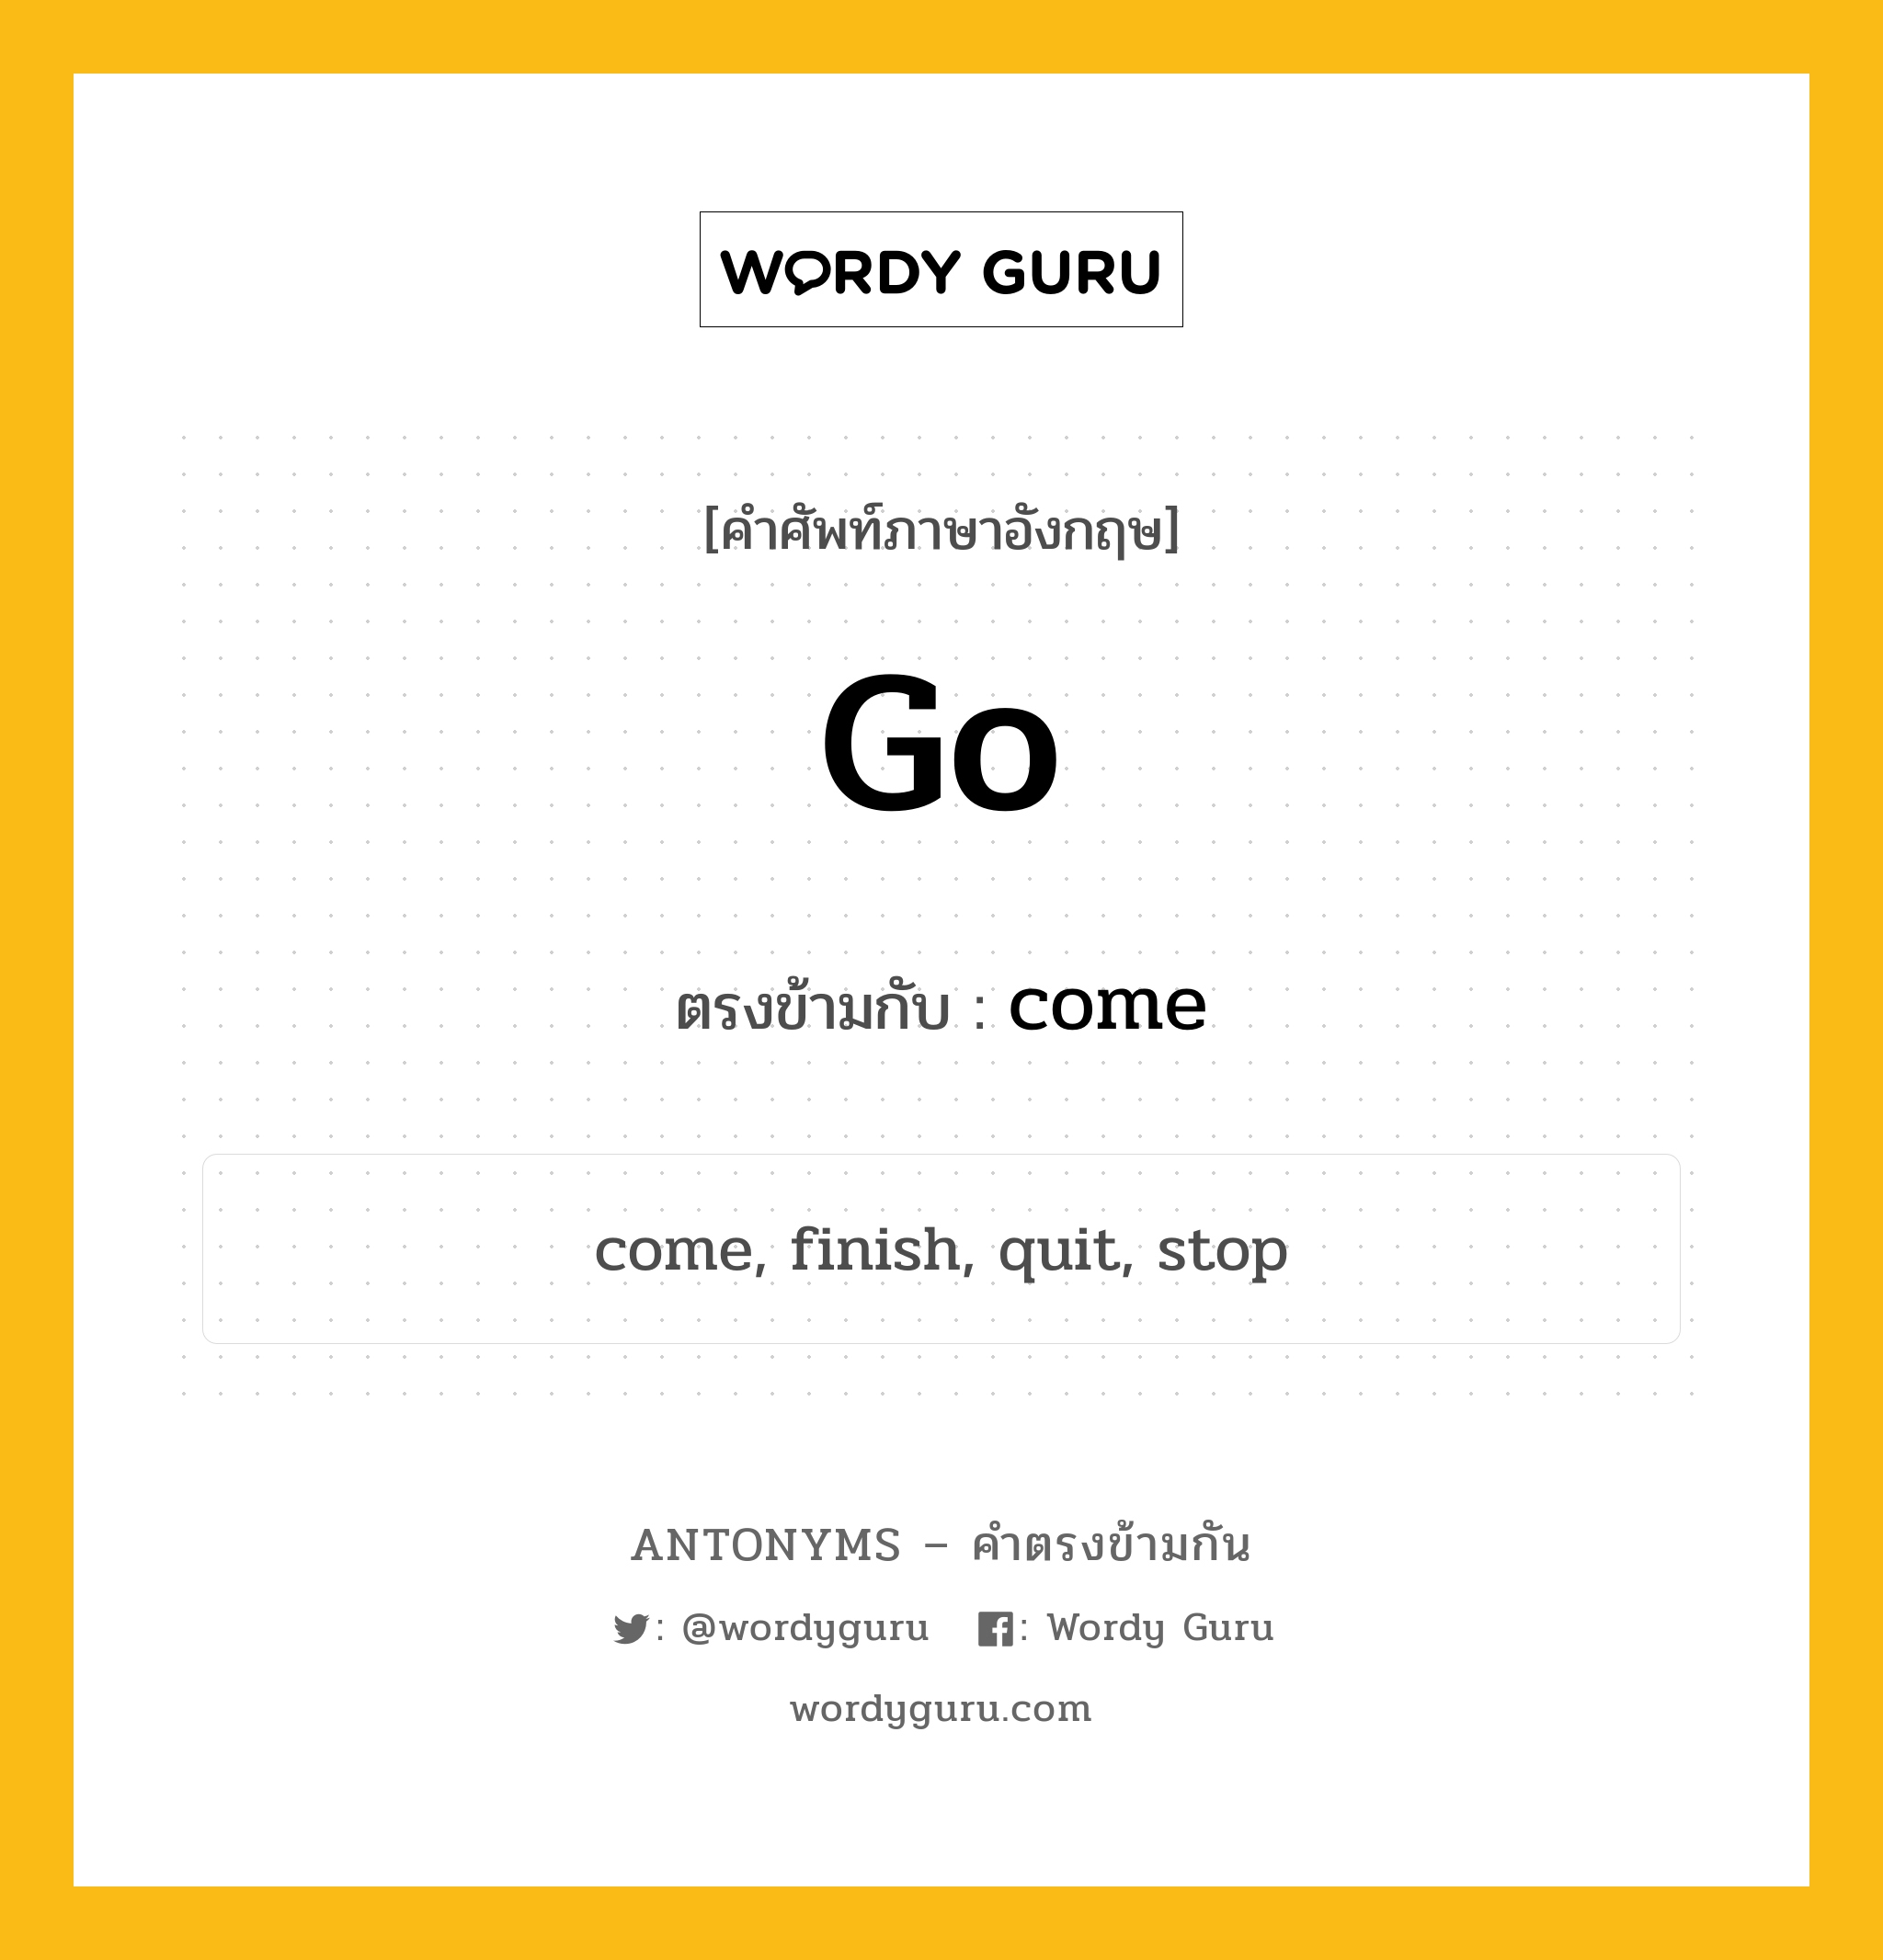 go เป็นคำตรงข้ามกับคำไหนบ้าง?, คำศัพท์ภาษาอังกฤษ go ตรงข้ามกับ come หมวด come